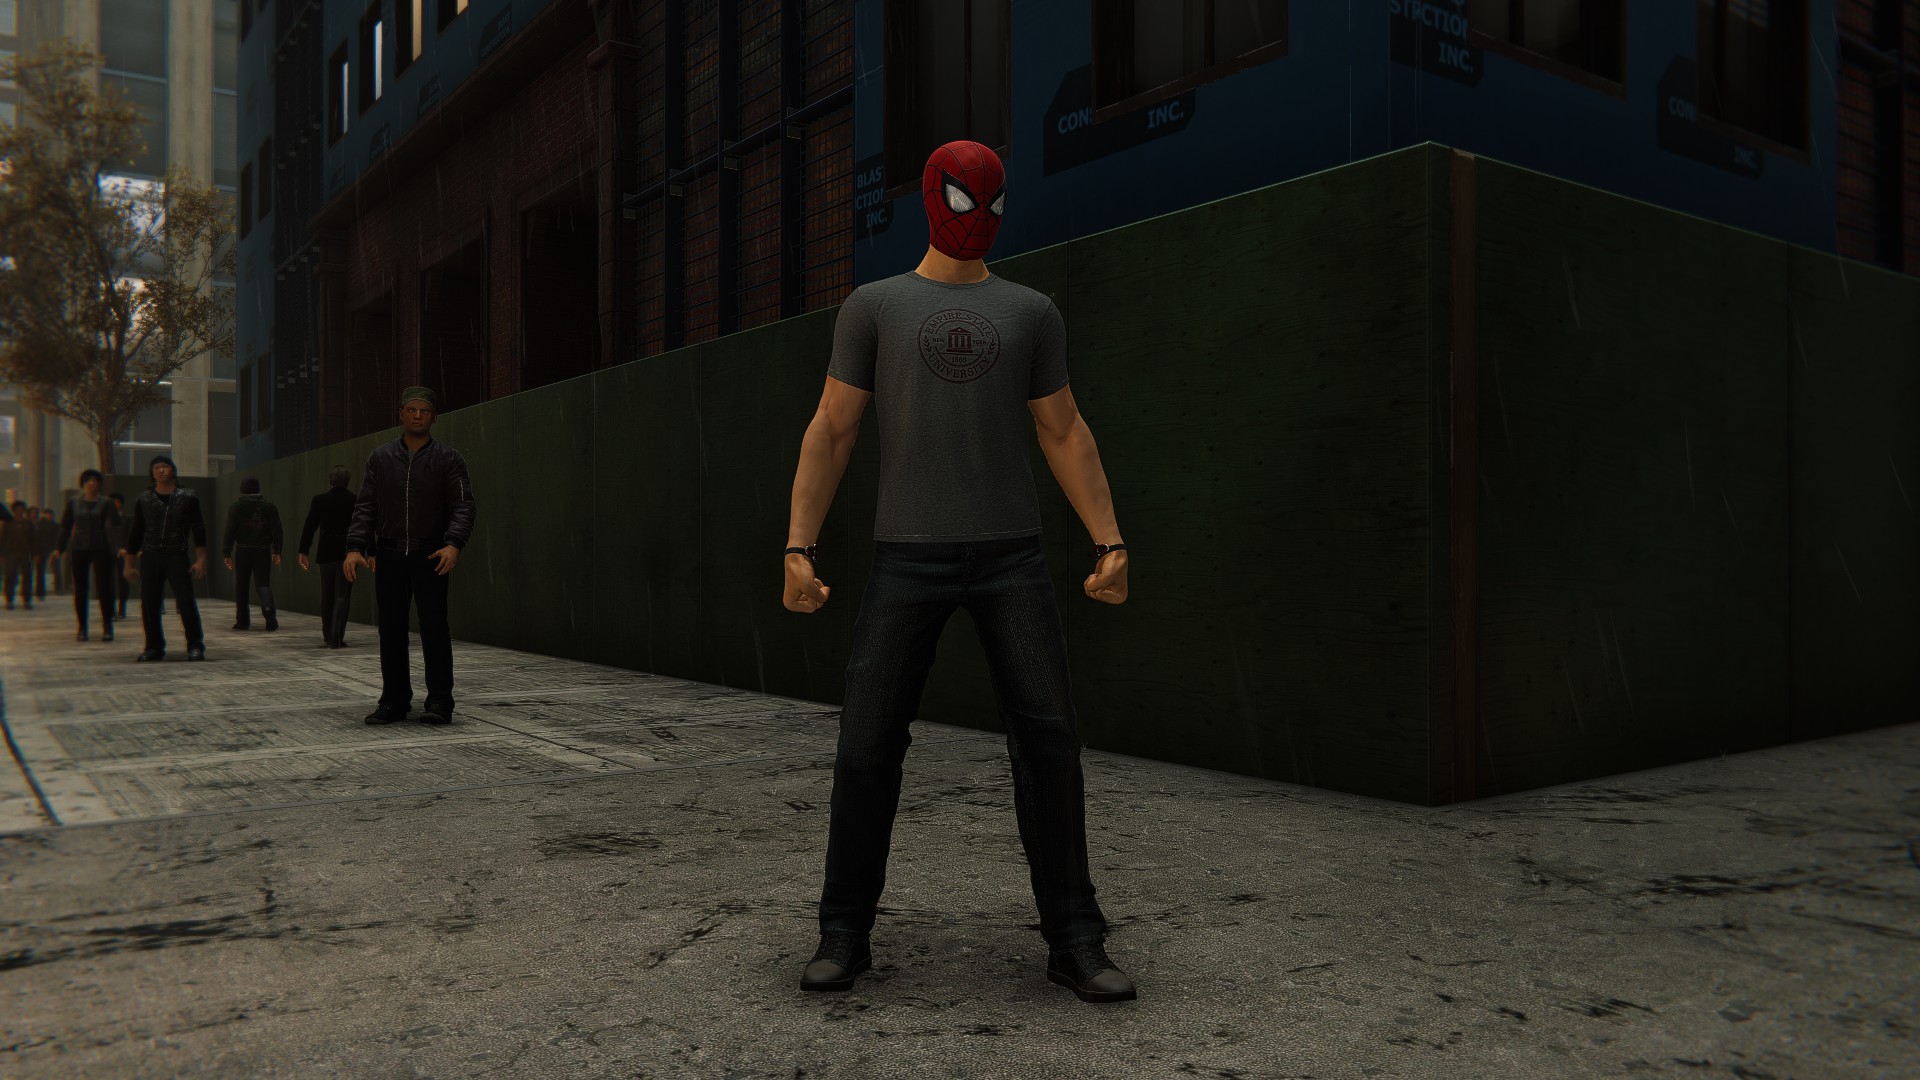 Костюм Человека-паука для ESU — Человек-паук носит джинсы, серую футболку и красную маску Человека-паука.